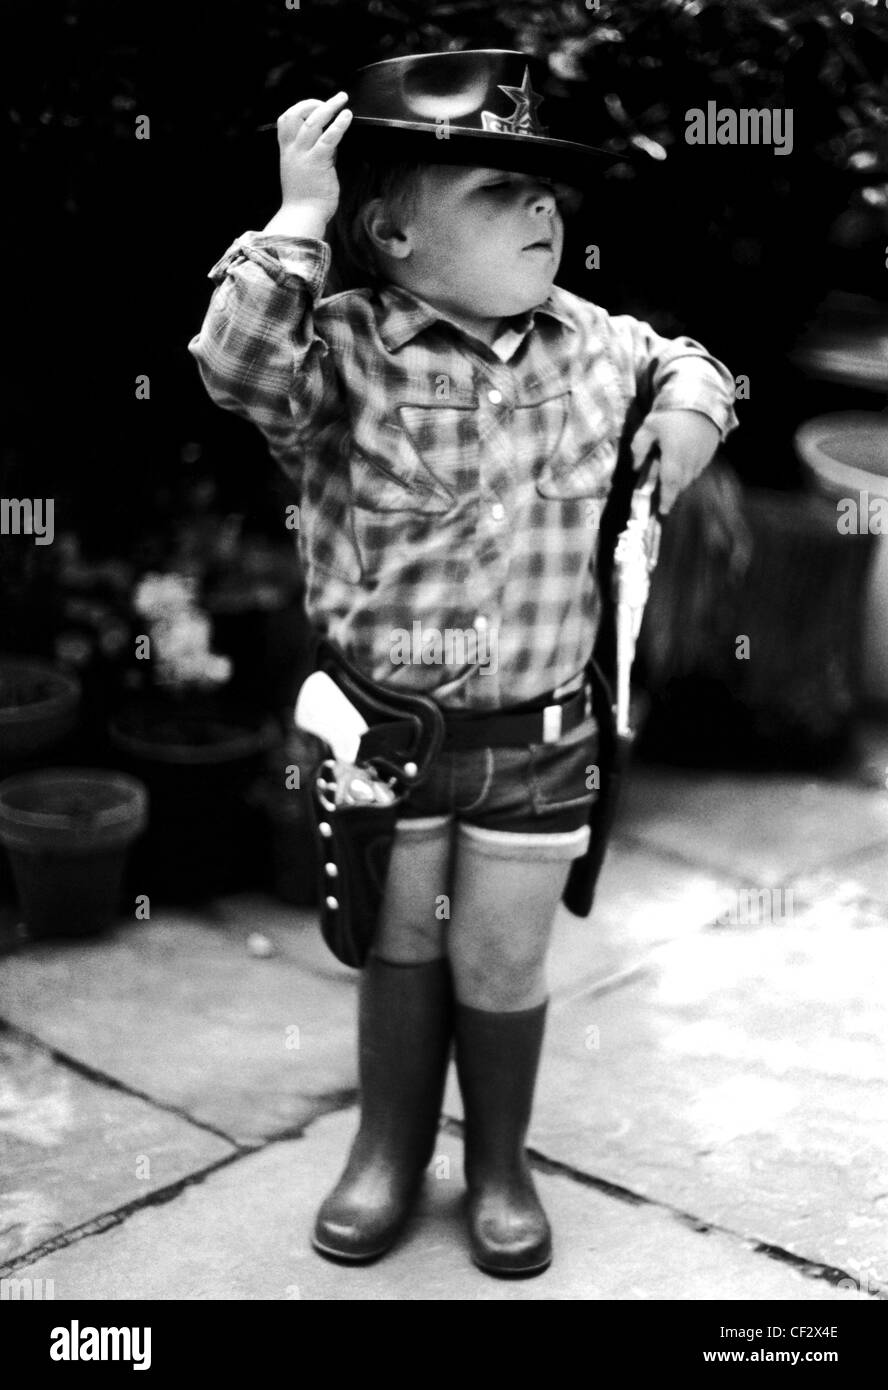 S bambino maschio indossa controllata T-shirt, jeans corti, gomma stivali da pioggia, cinghia fondine pistola e pistole giocattolo e il nero Foto Stock